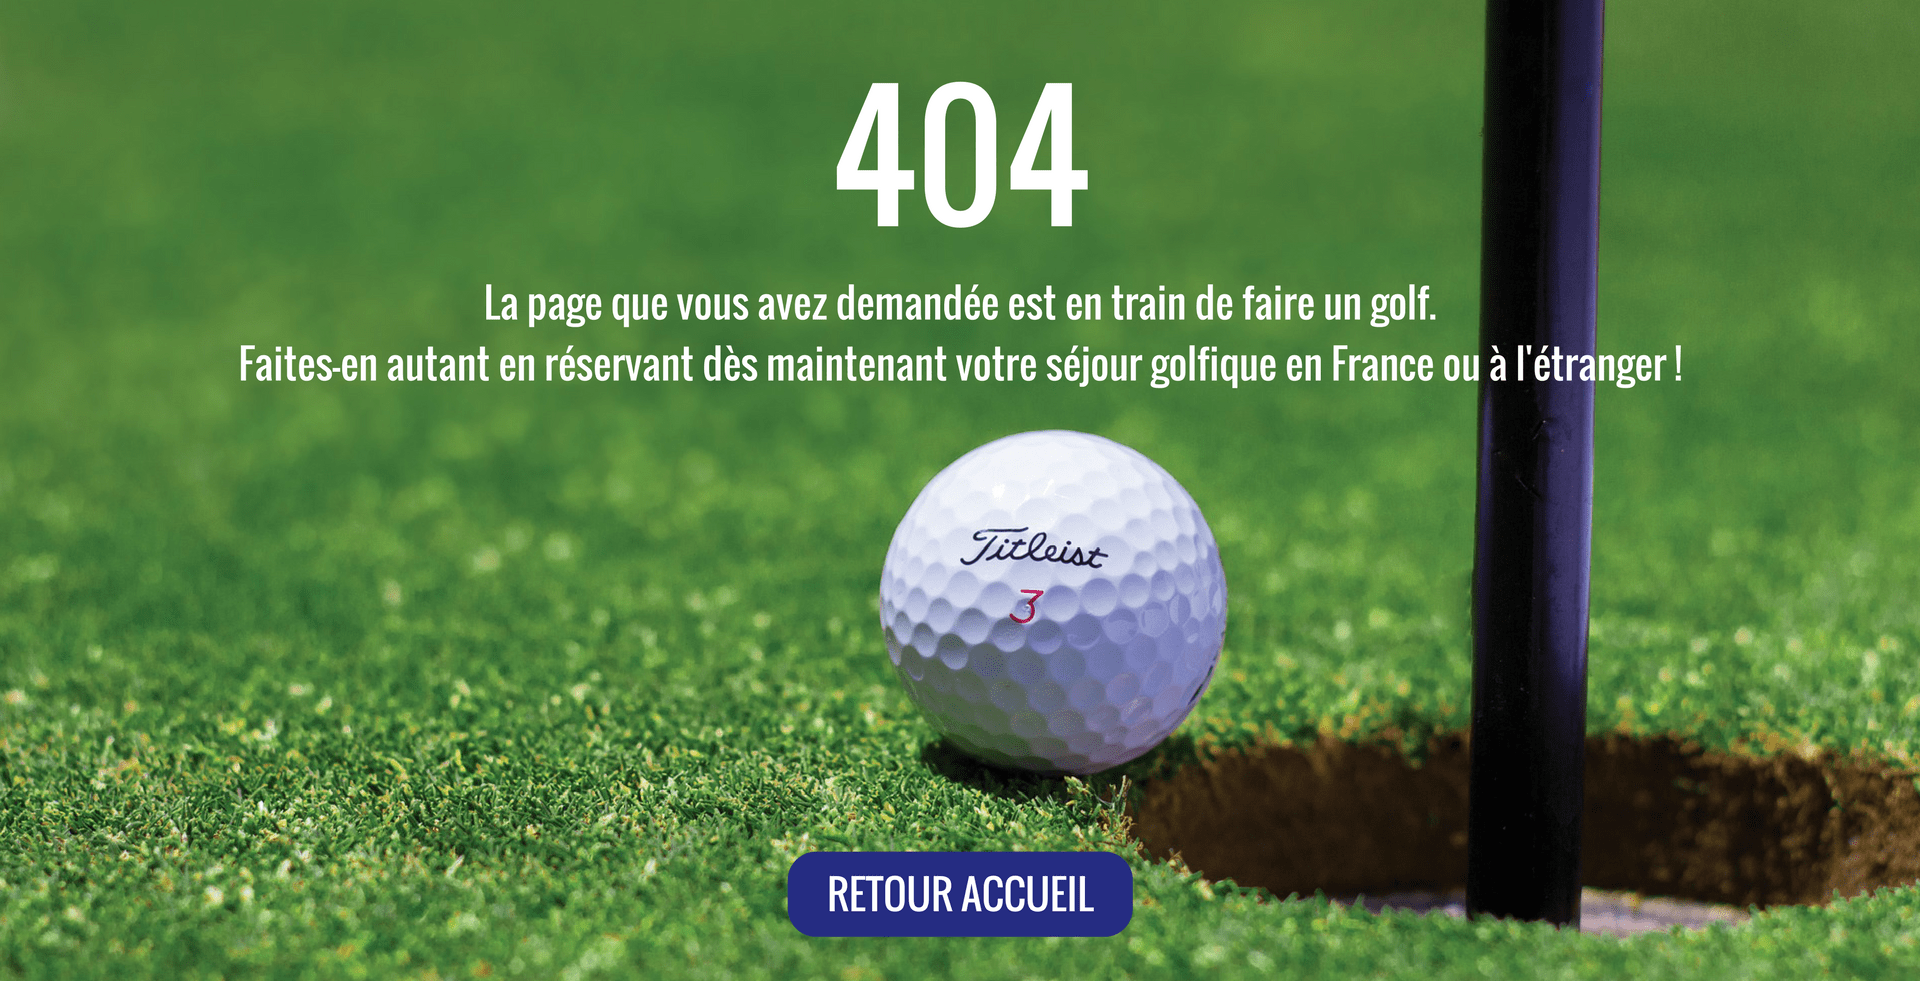 La page que vous avez demandé est en train de faire un golf. Faites-en autant en réservant dès maintenant votre séjour golfique en France ou à l’étranger !